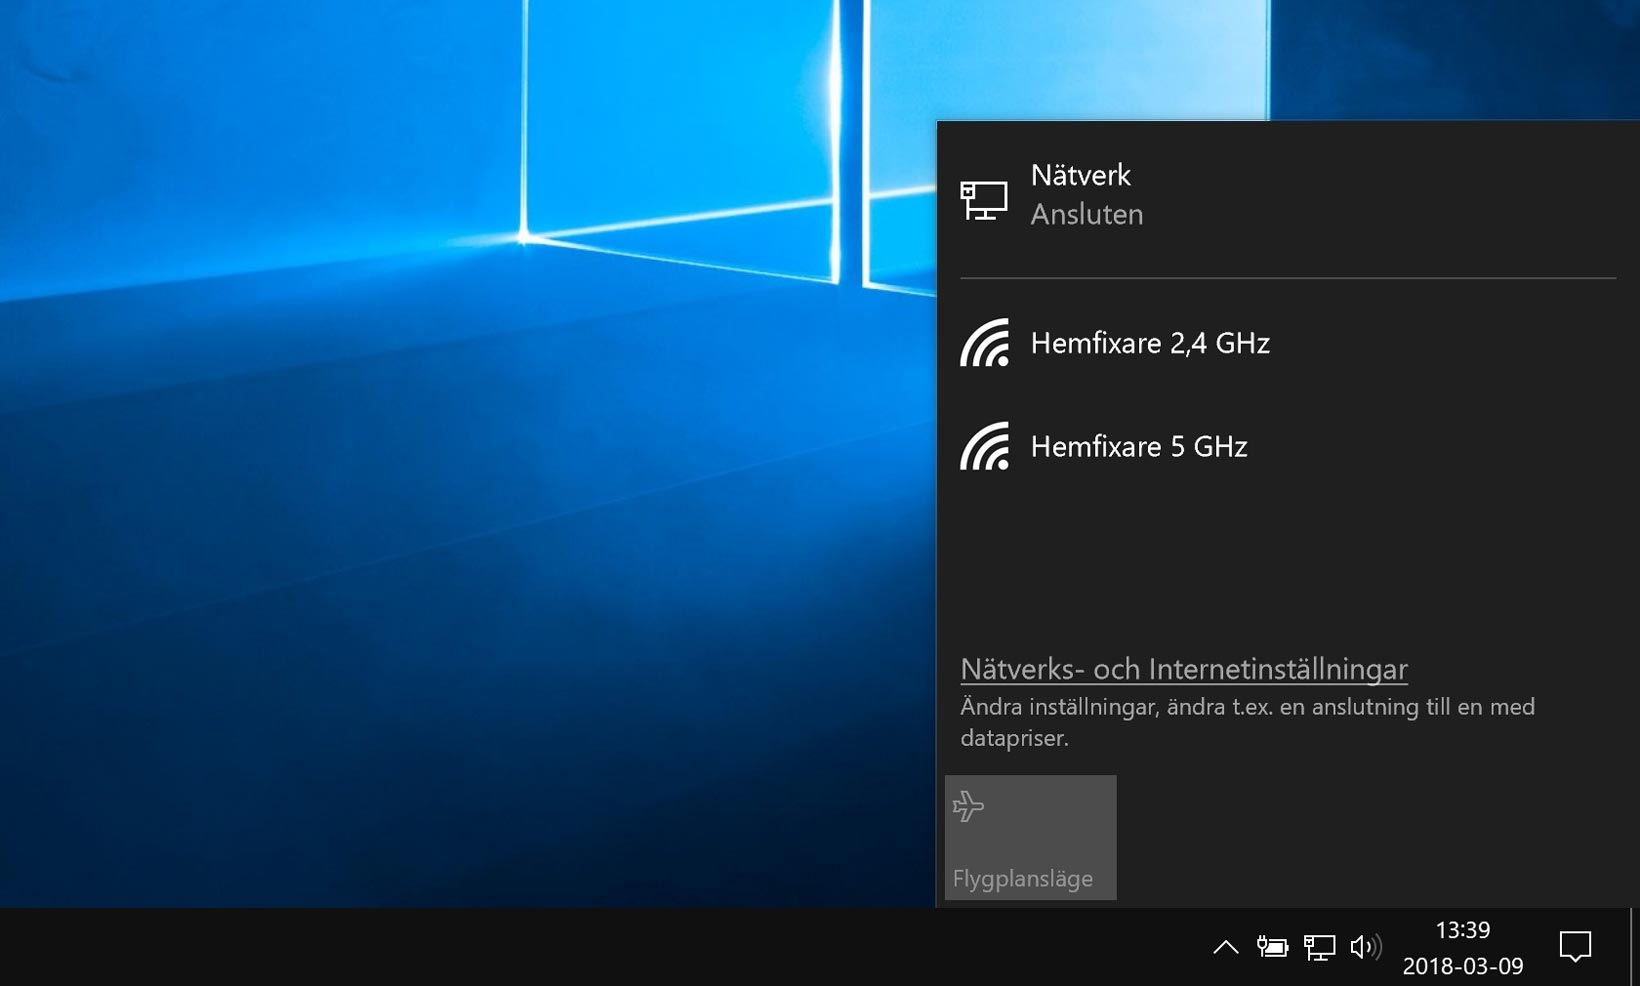 Windows visar två trådlösa nätverksnamn